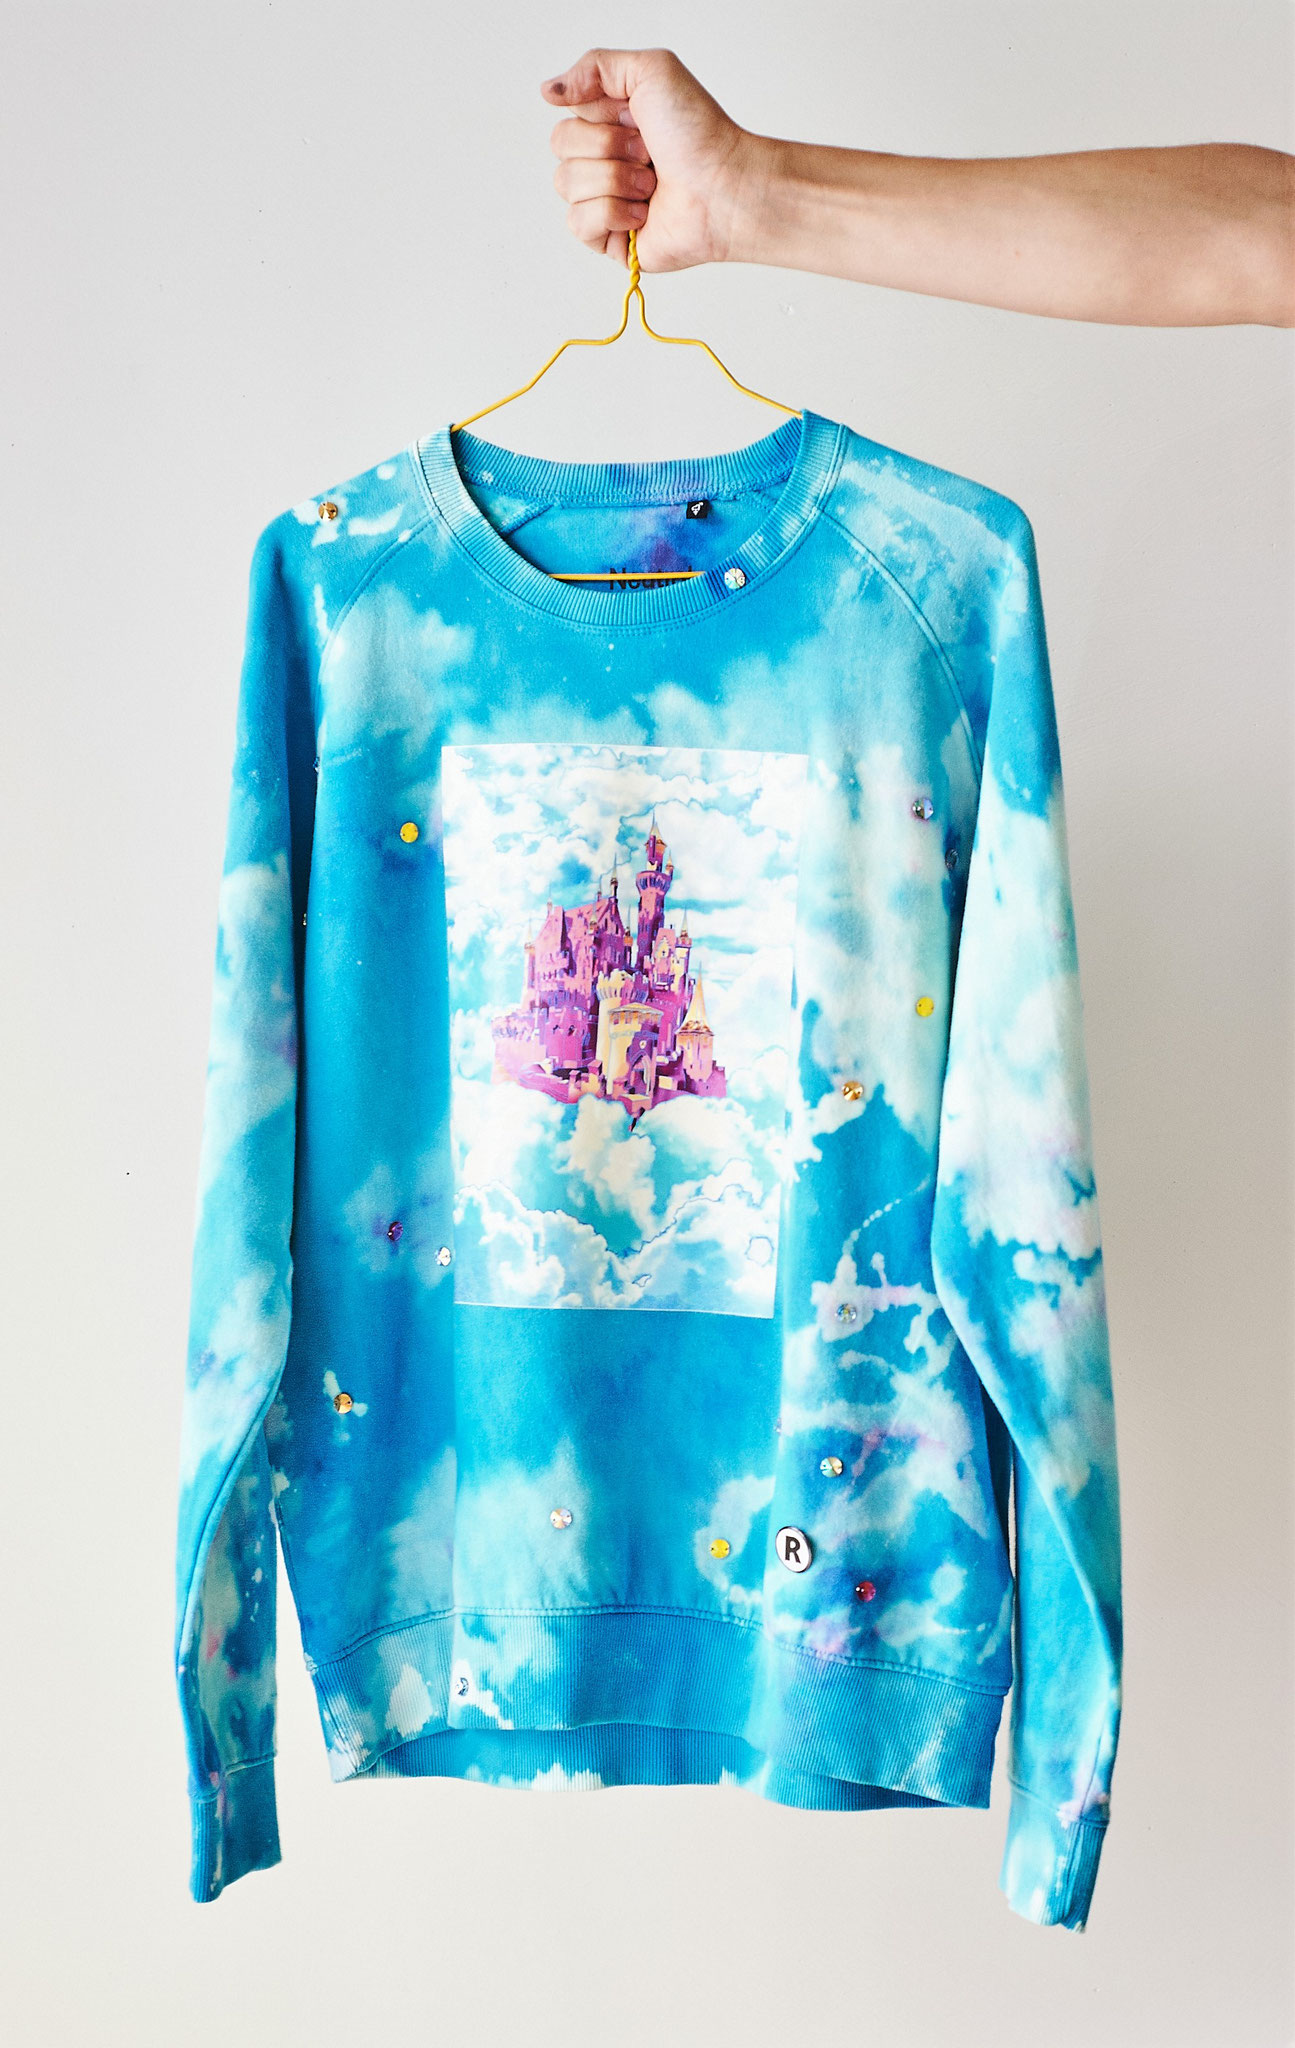 Blue Falkenstein in the Clouds Sweater, Textildruck, Thermofolie, Swarovski-Kristalle, Pin, 2021